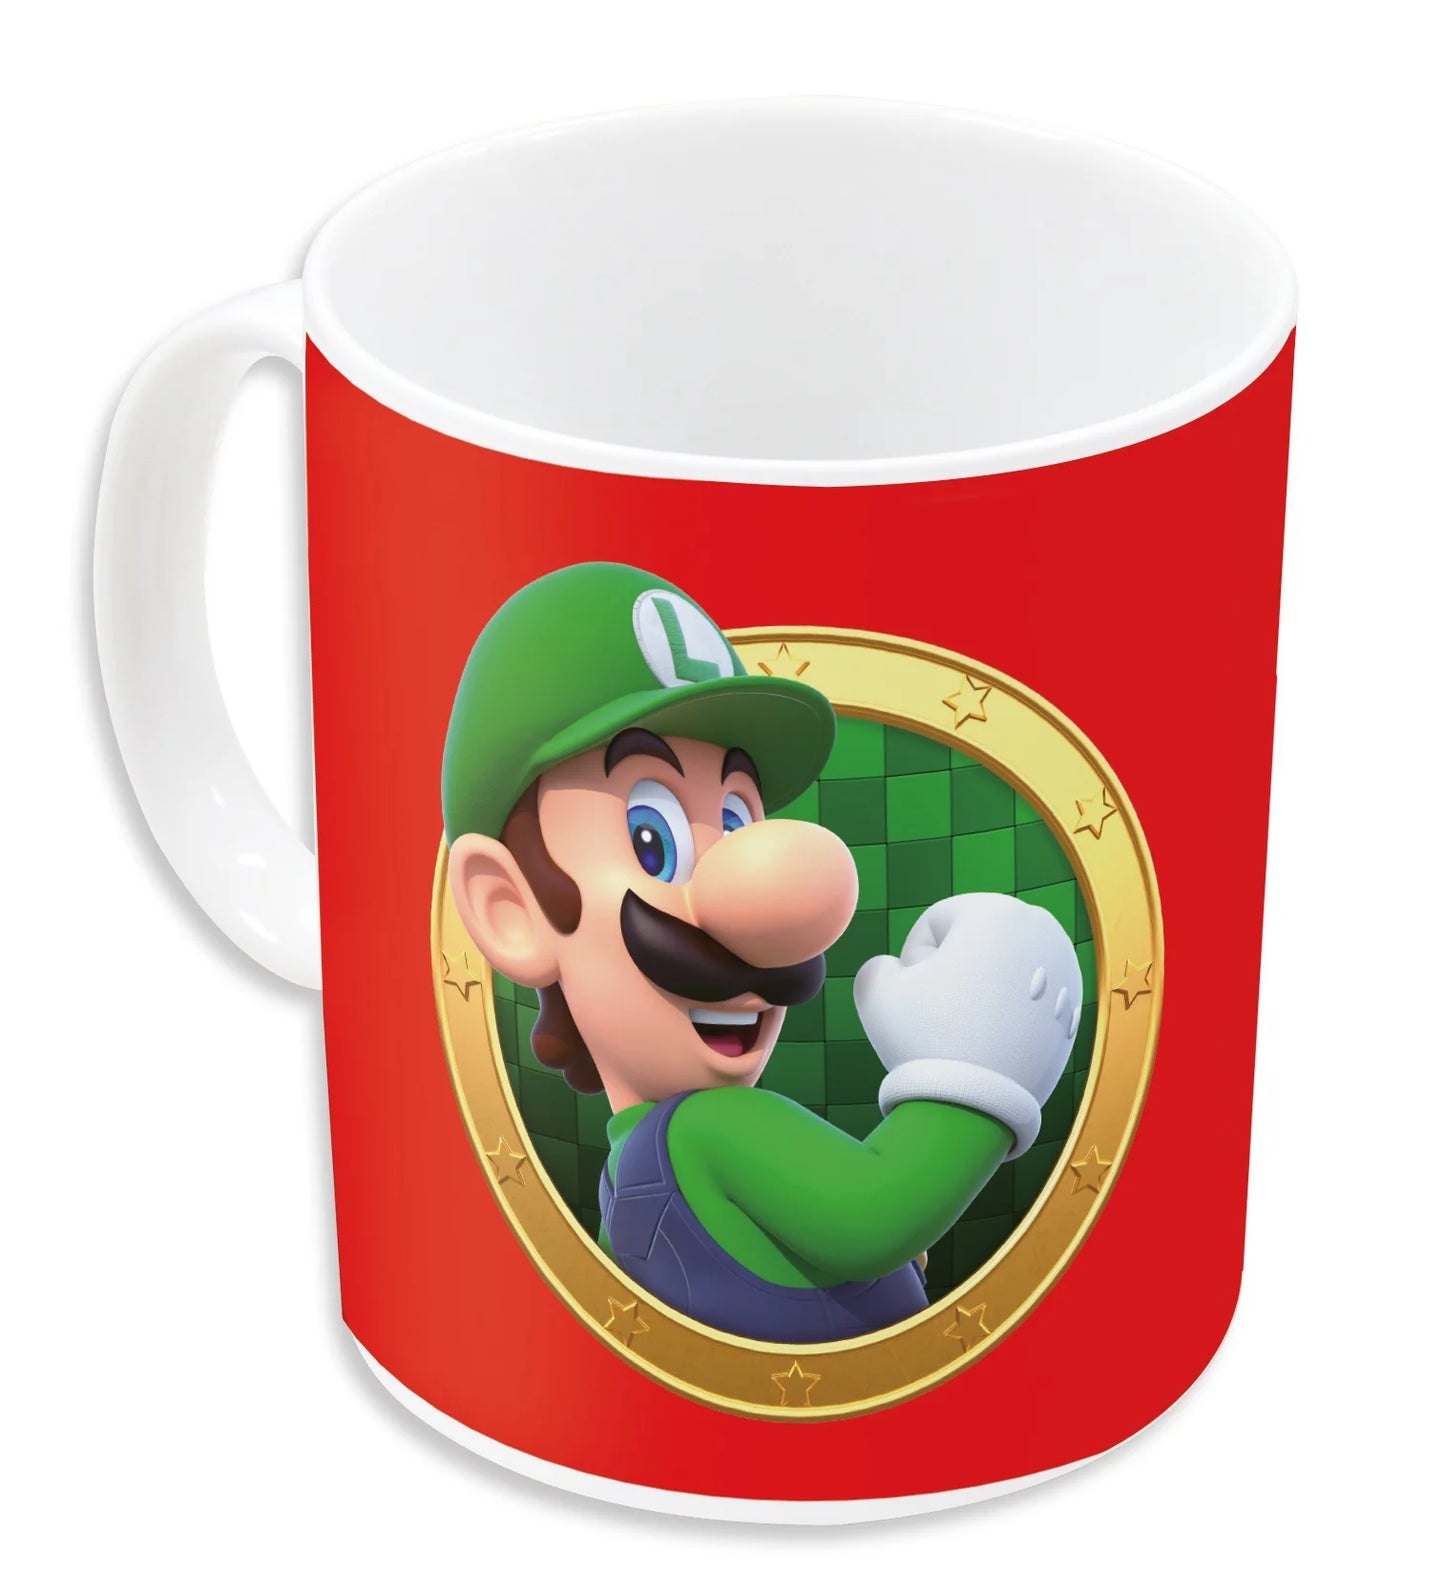 Mug Super Mario - Mario & Luigi - PRECOMMANDE*